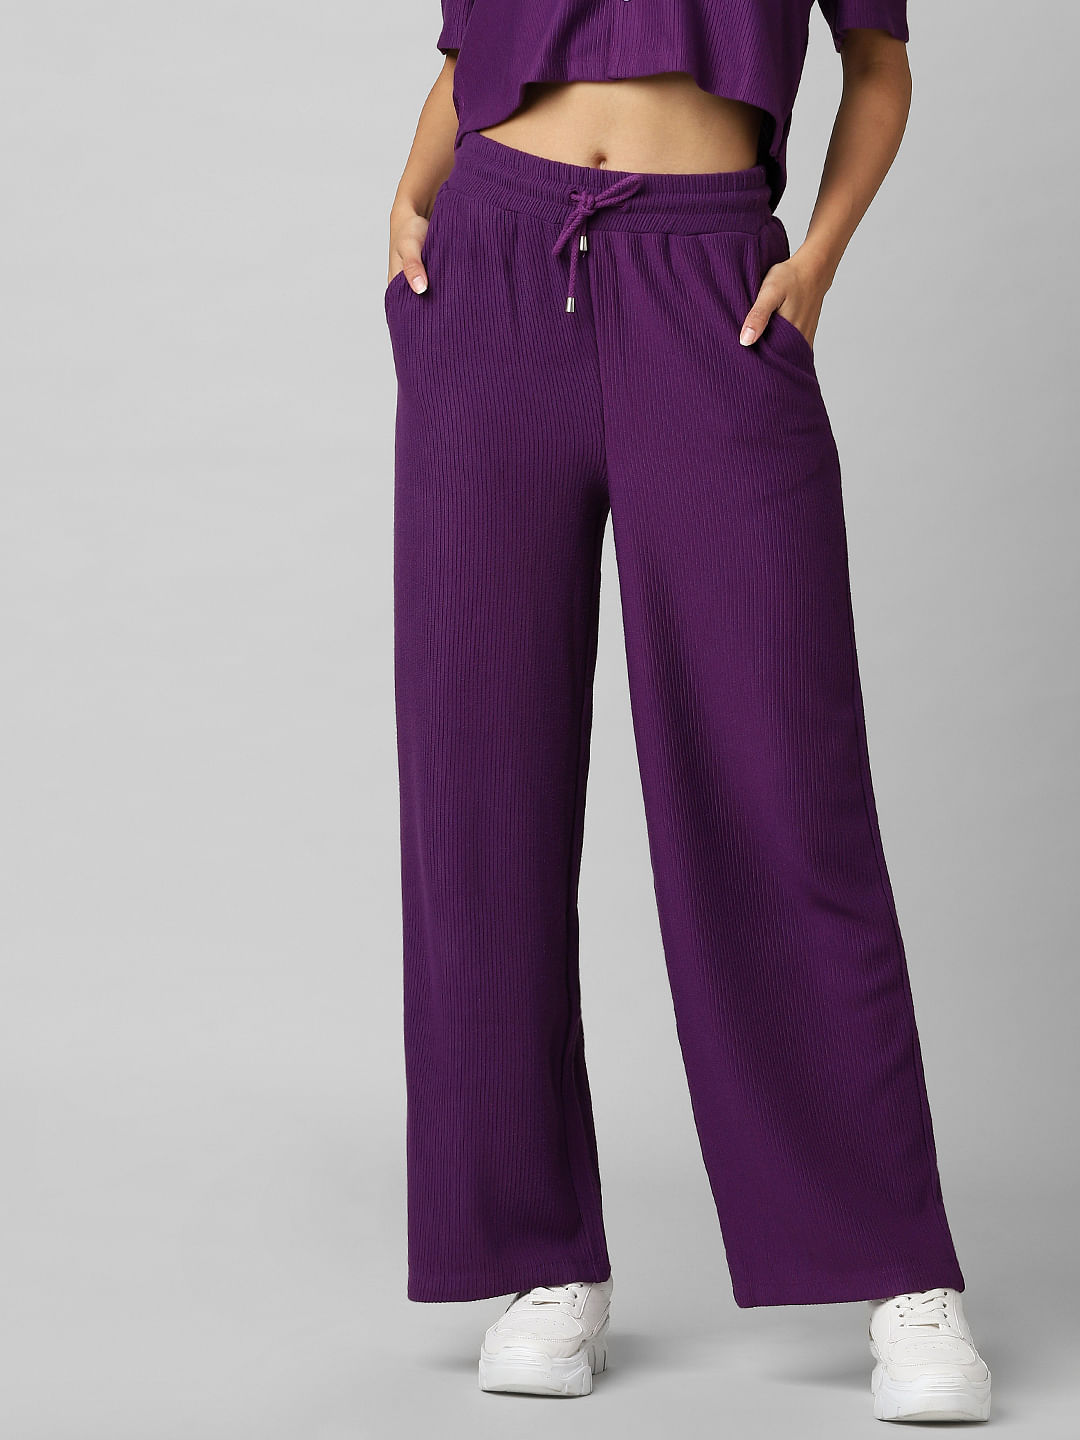 Buy Purple Trousers  Pants for Women by WUXI Online  Ajiocom